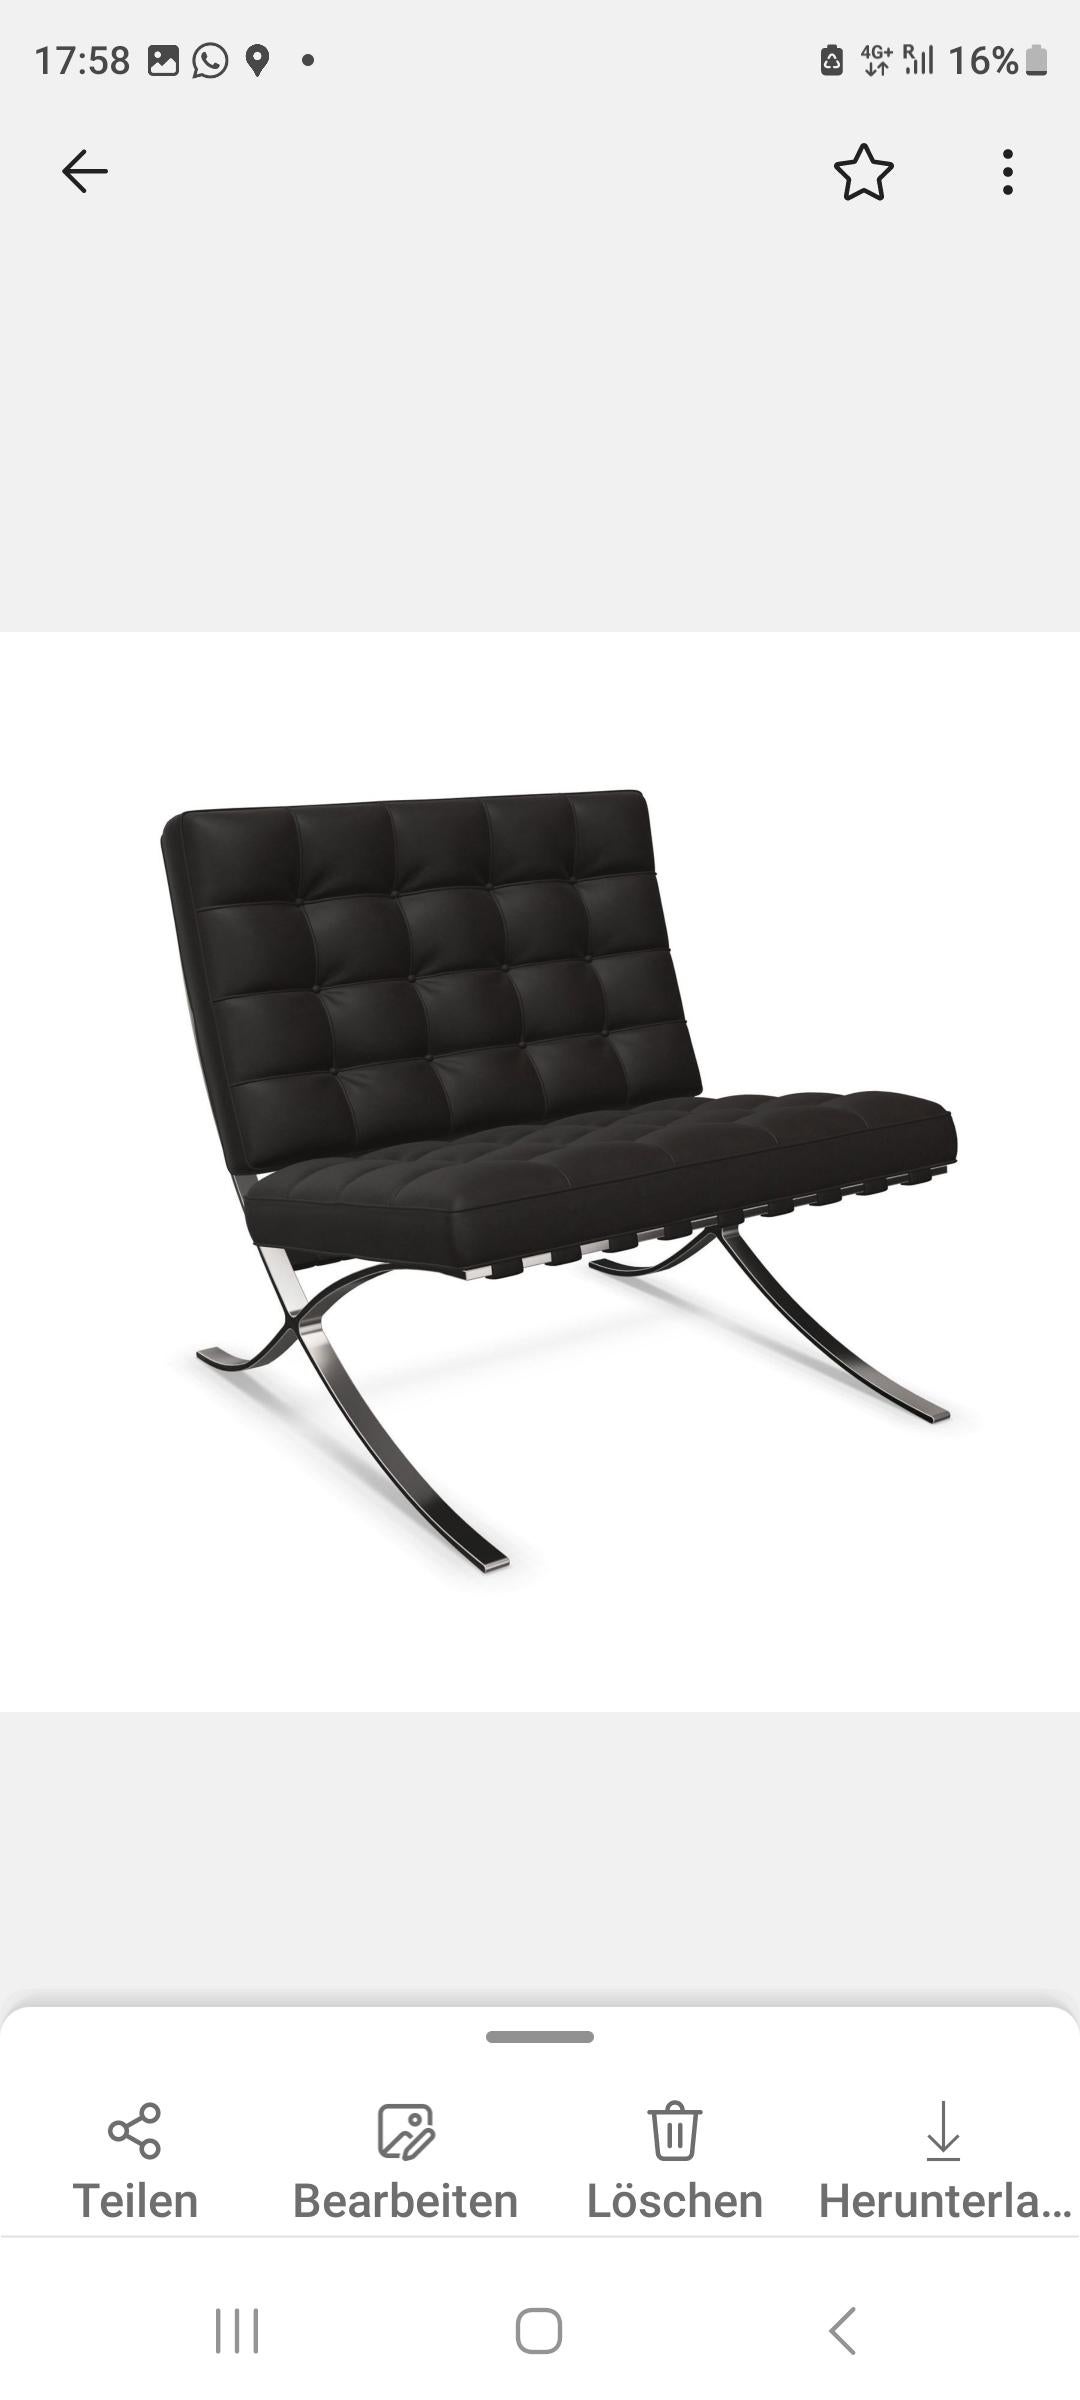 Der Barcelona Chair ist eine Stilikone modernen Möbeldesigns und hat Ludwig Mies van der Rohe berühmt gemacht und wurde gleichzeitig zum Markenzeichen von Knoll. 

Denn der Stuhl wurde eigens für den Pavillon der Weimarer Republik in Barcelona